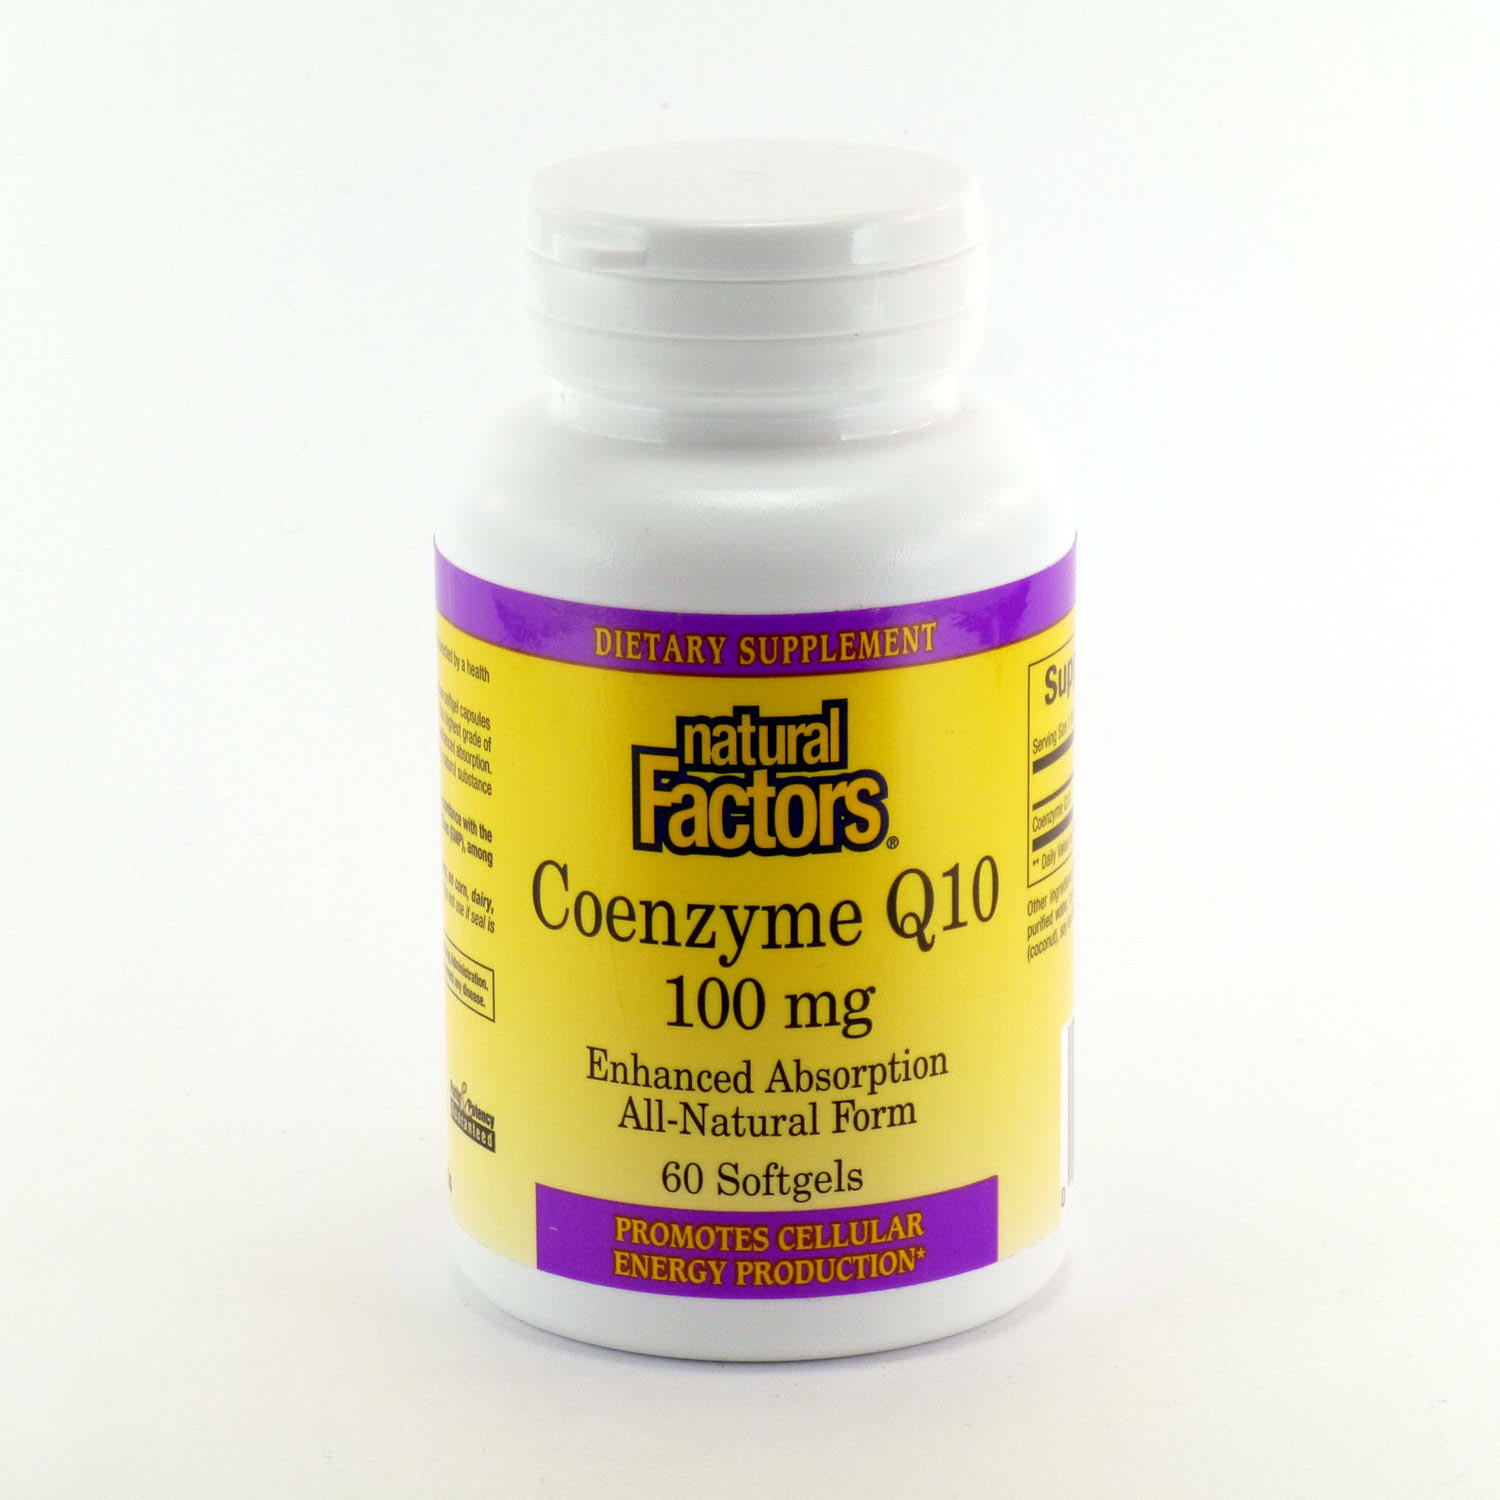 Natural Factors Coenzyme Q10 Supplement - 100mg, 60 Softgels